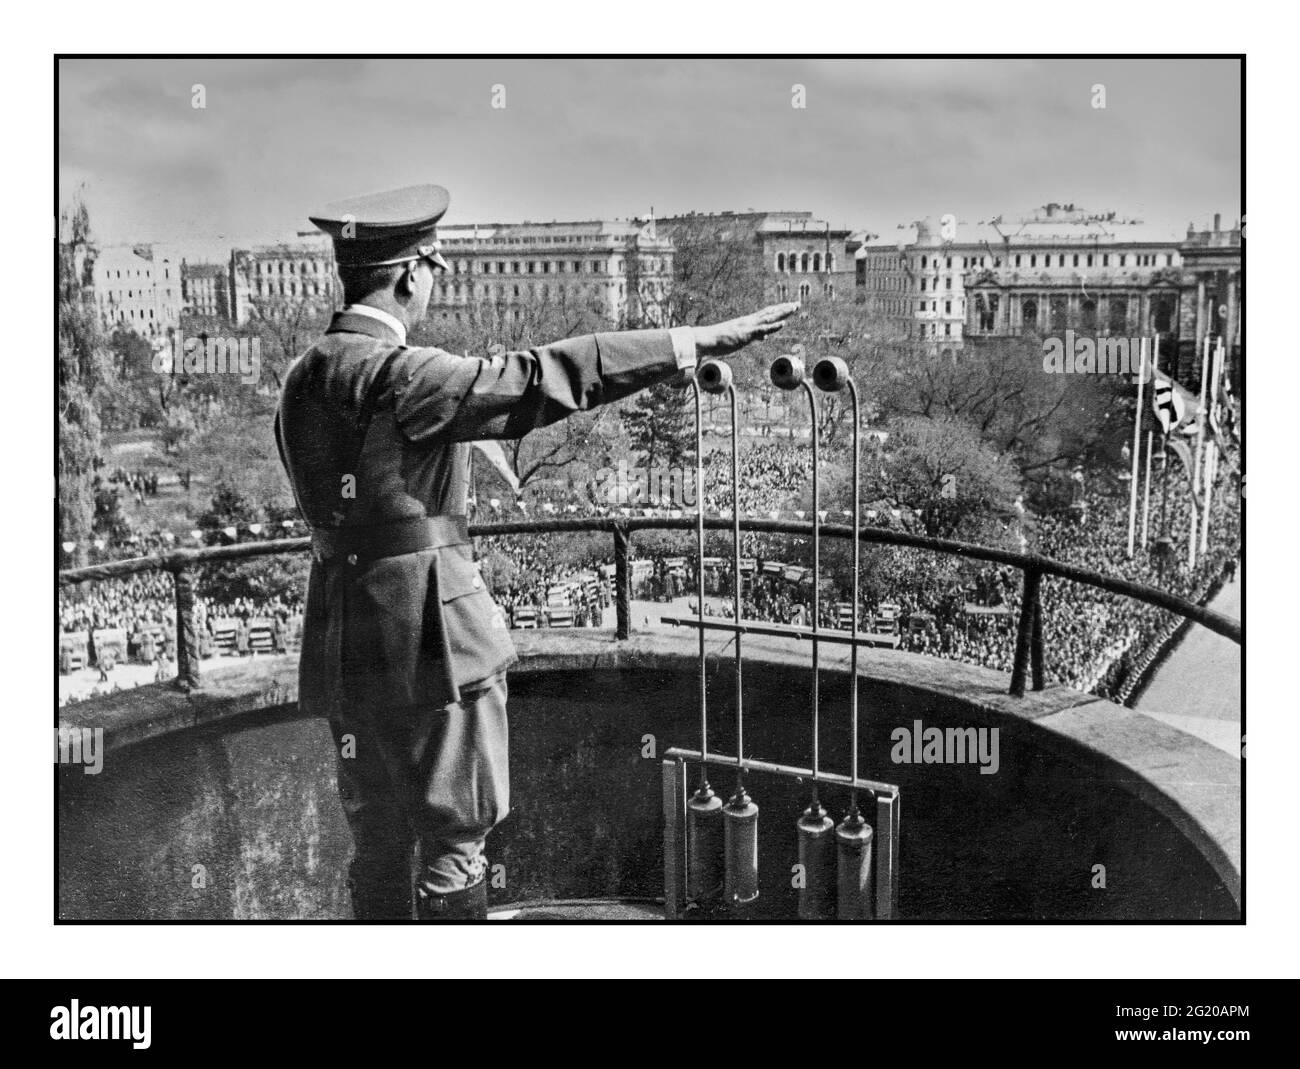 ADOLF HITLER GRÜSST IN WIEN ÖSTERREICH NACH DEM ANSCHLUSS MÄRZ 15 1938 Adolf Hitler spricht in Uniform vom Balkon des Wiener Rathauses aus mit Hilfe von Rundfunkmikrofonen am 15. März 1938 in Wien, Österreich. Der Anschluss Annexion fand am 12. März 1938 statt Stockfoto